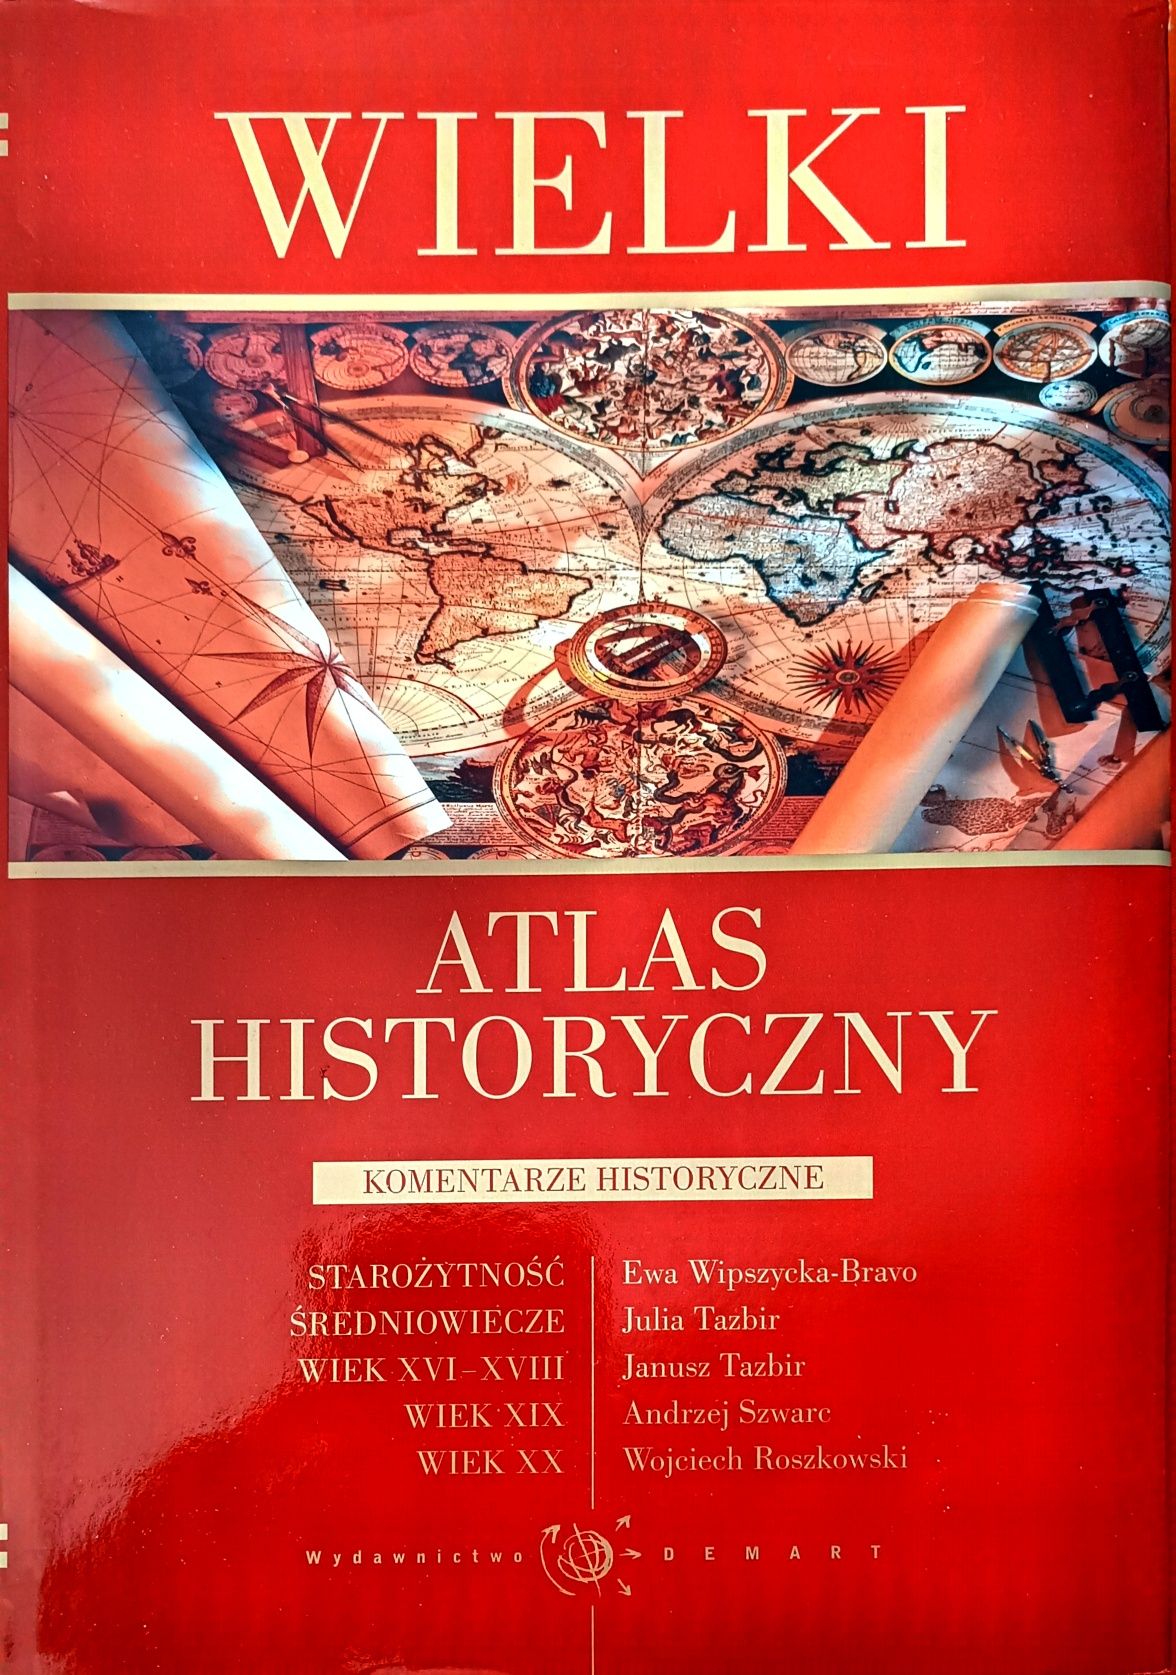 Wielki Atlas Historyczny wyd. Demart NOWY!!!